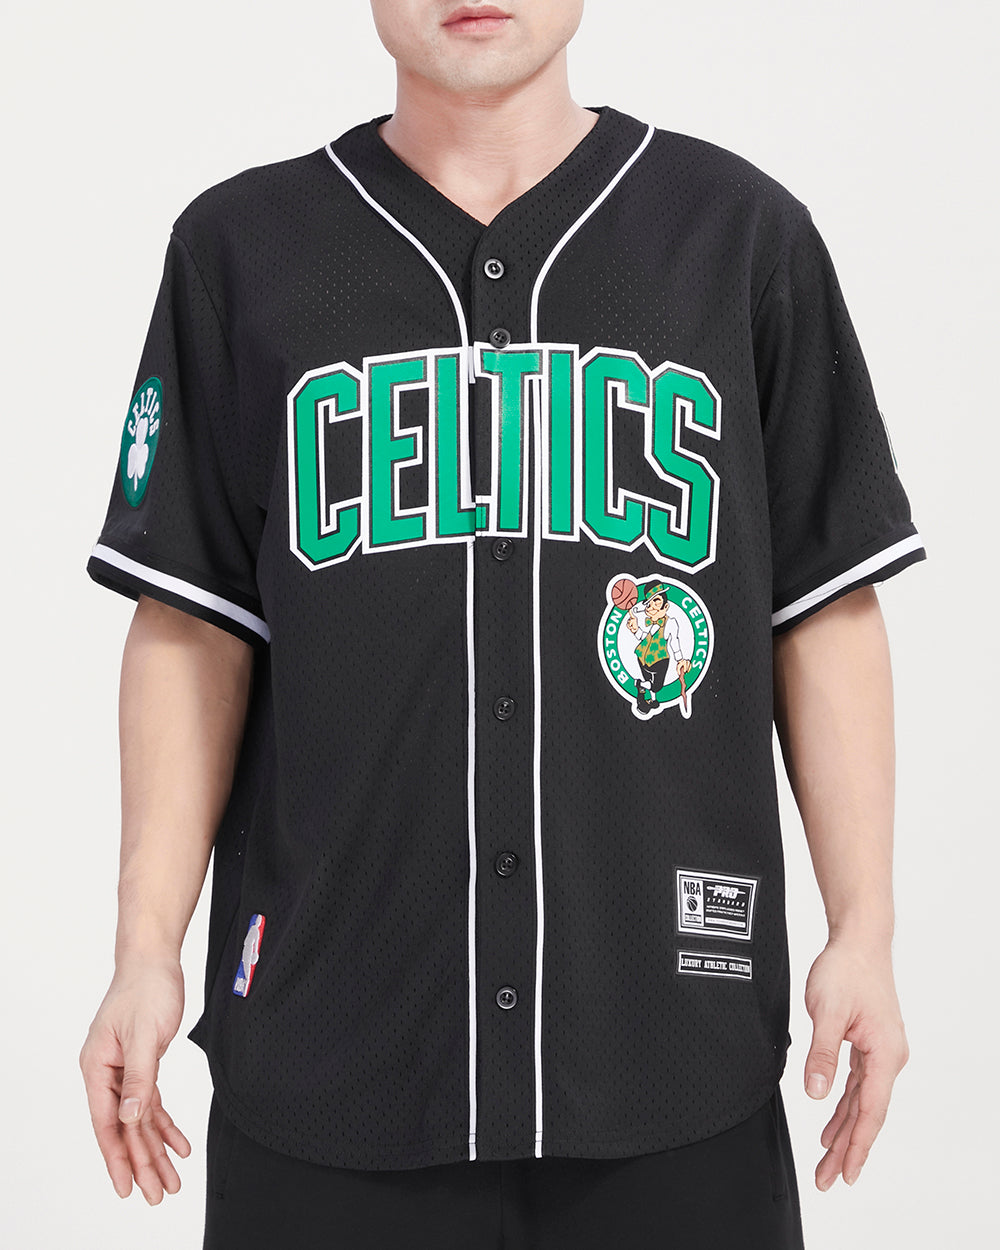 Women's Boston Celtics Baseball Jersey - All Stitched